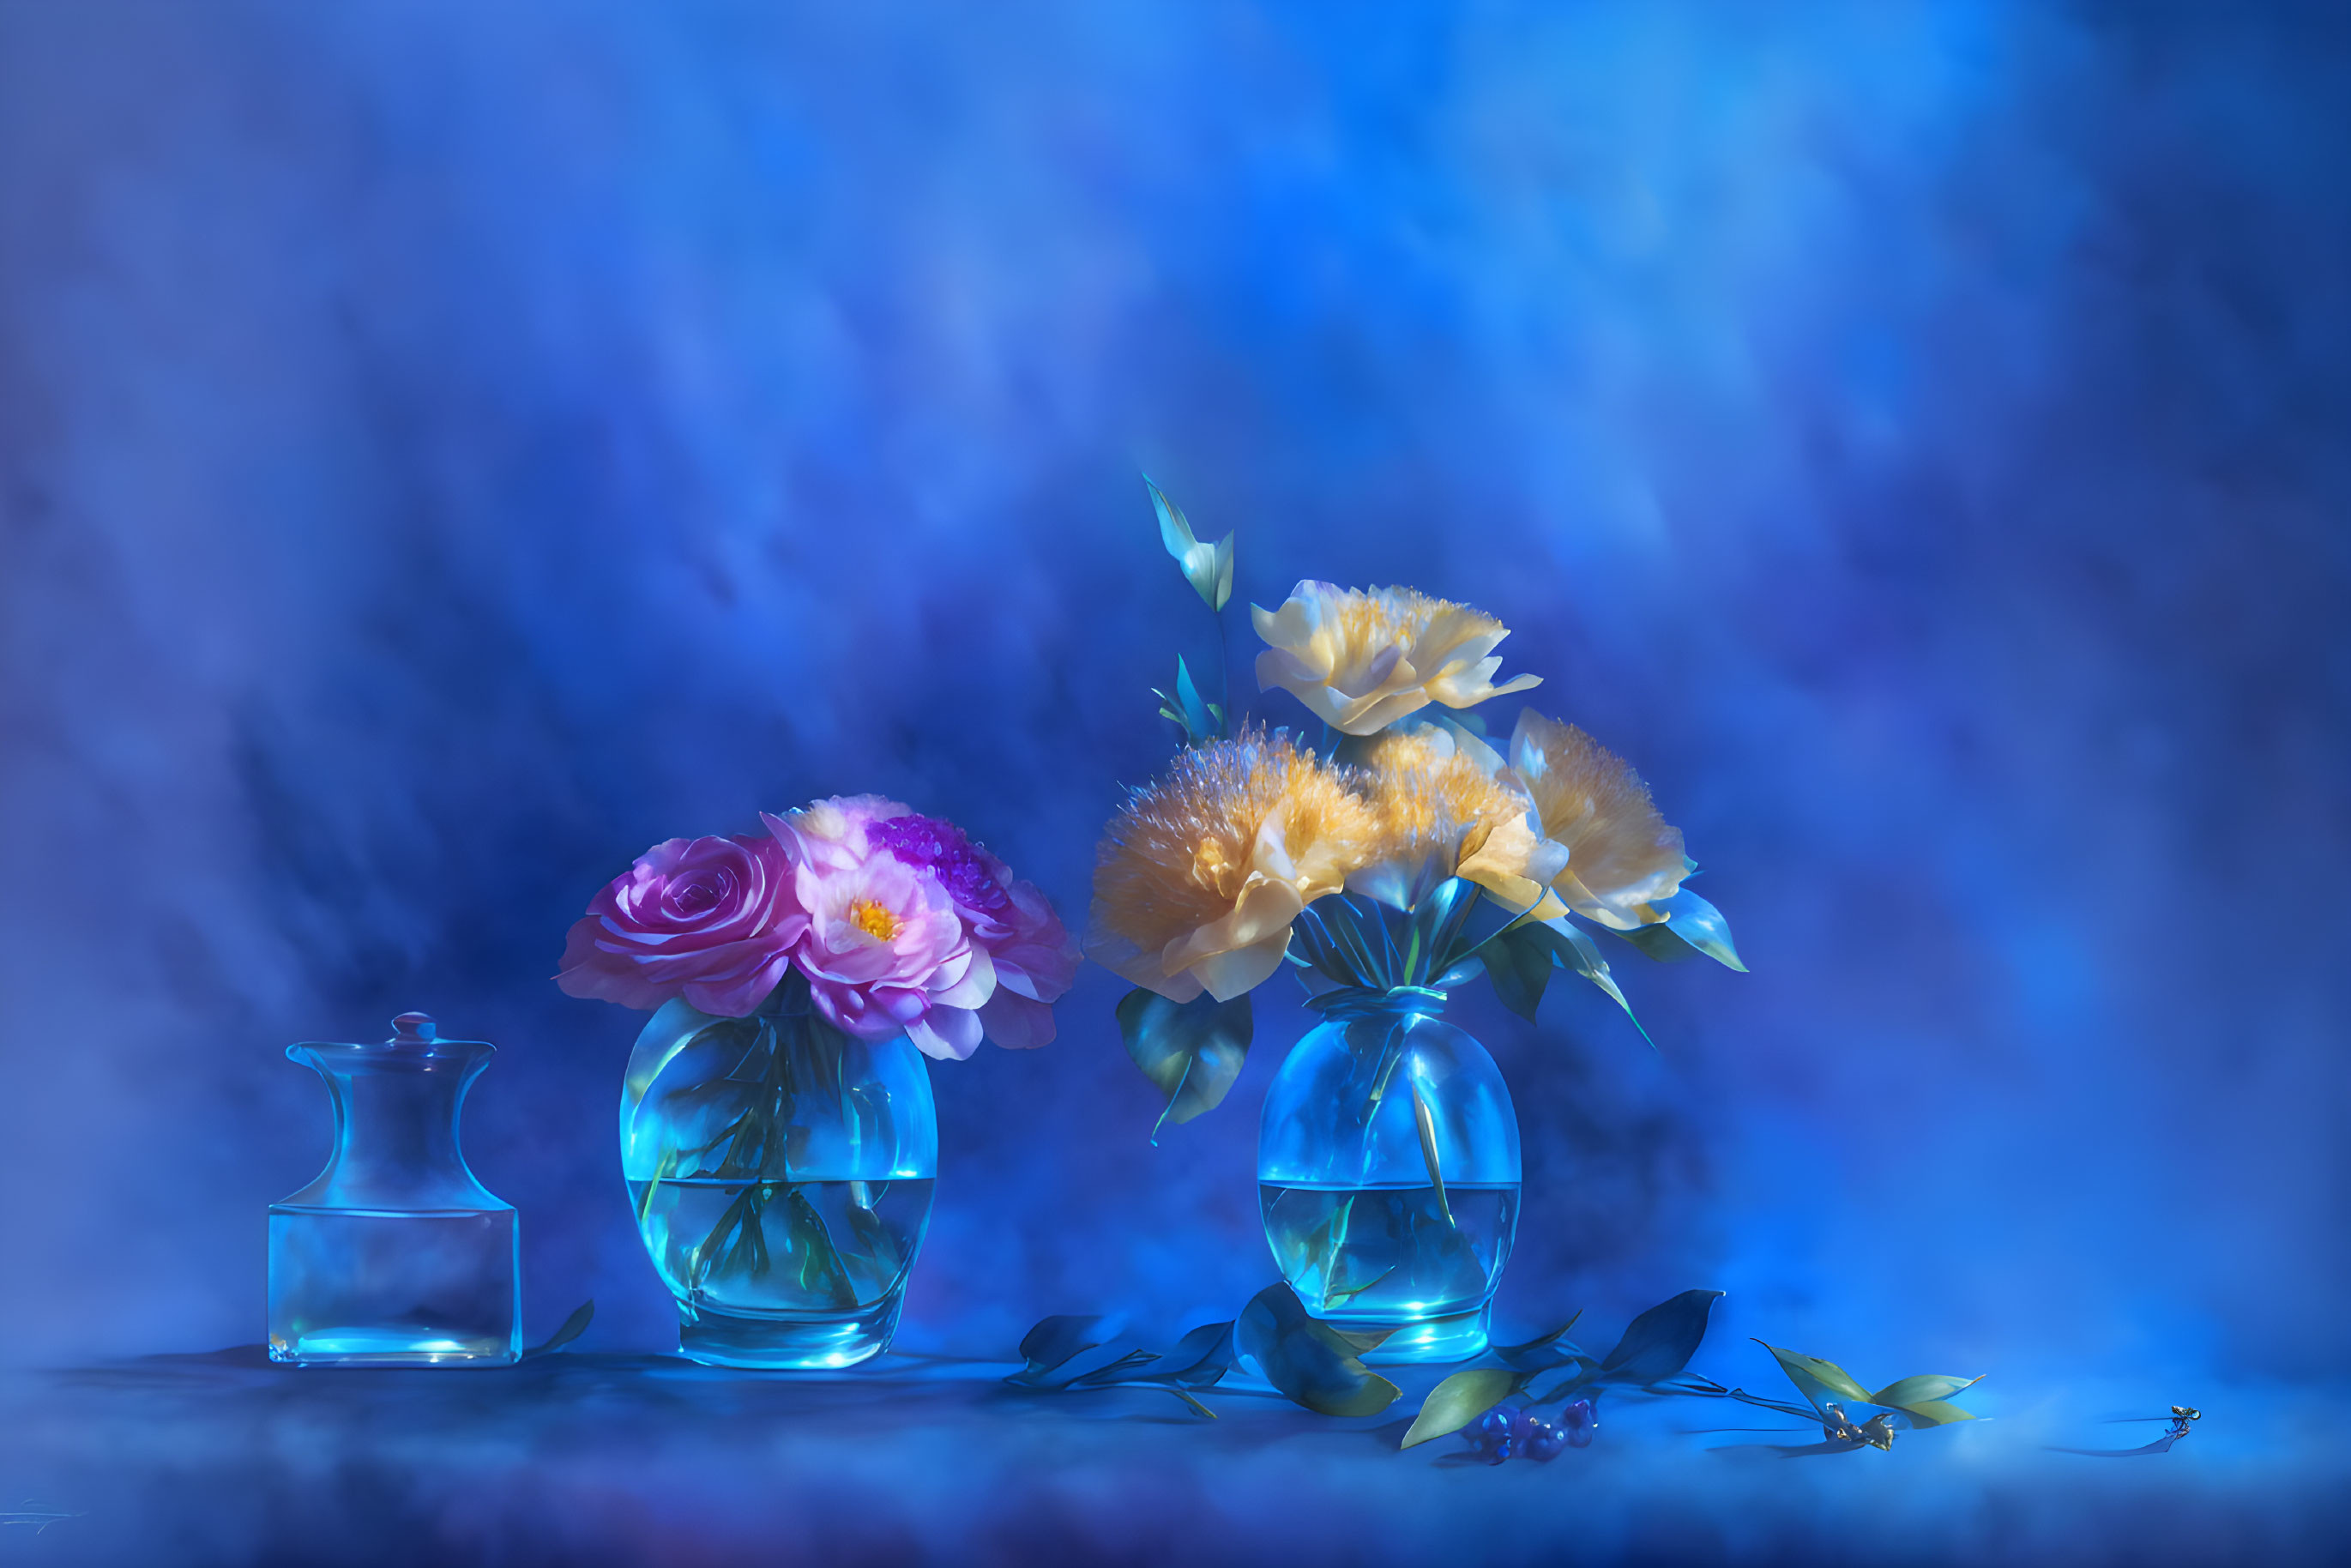 Floral Elegance on Blue